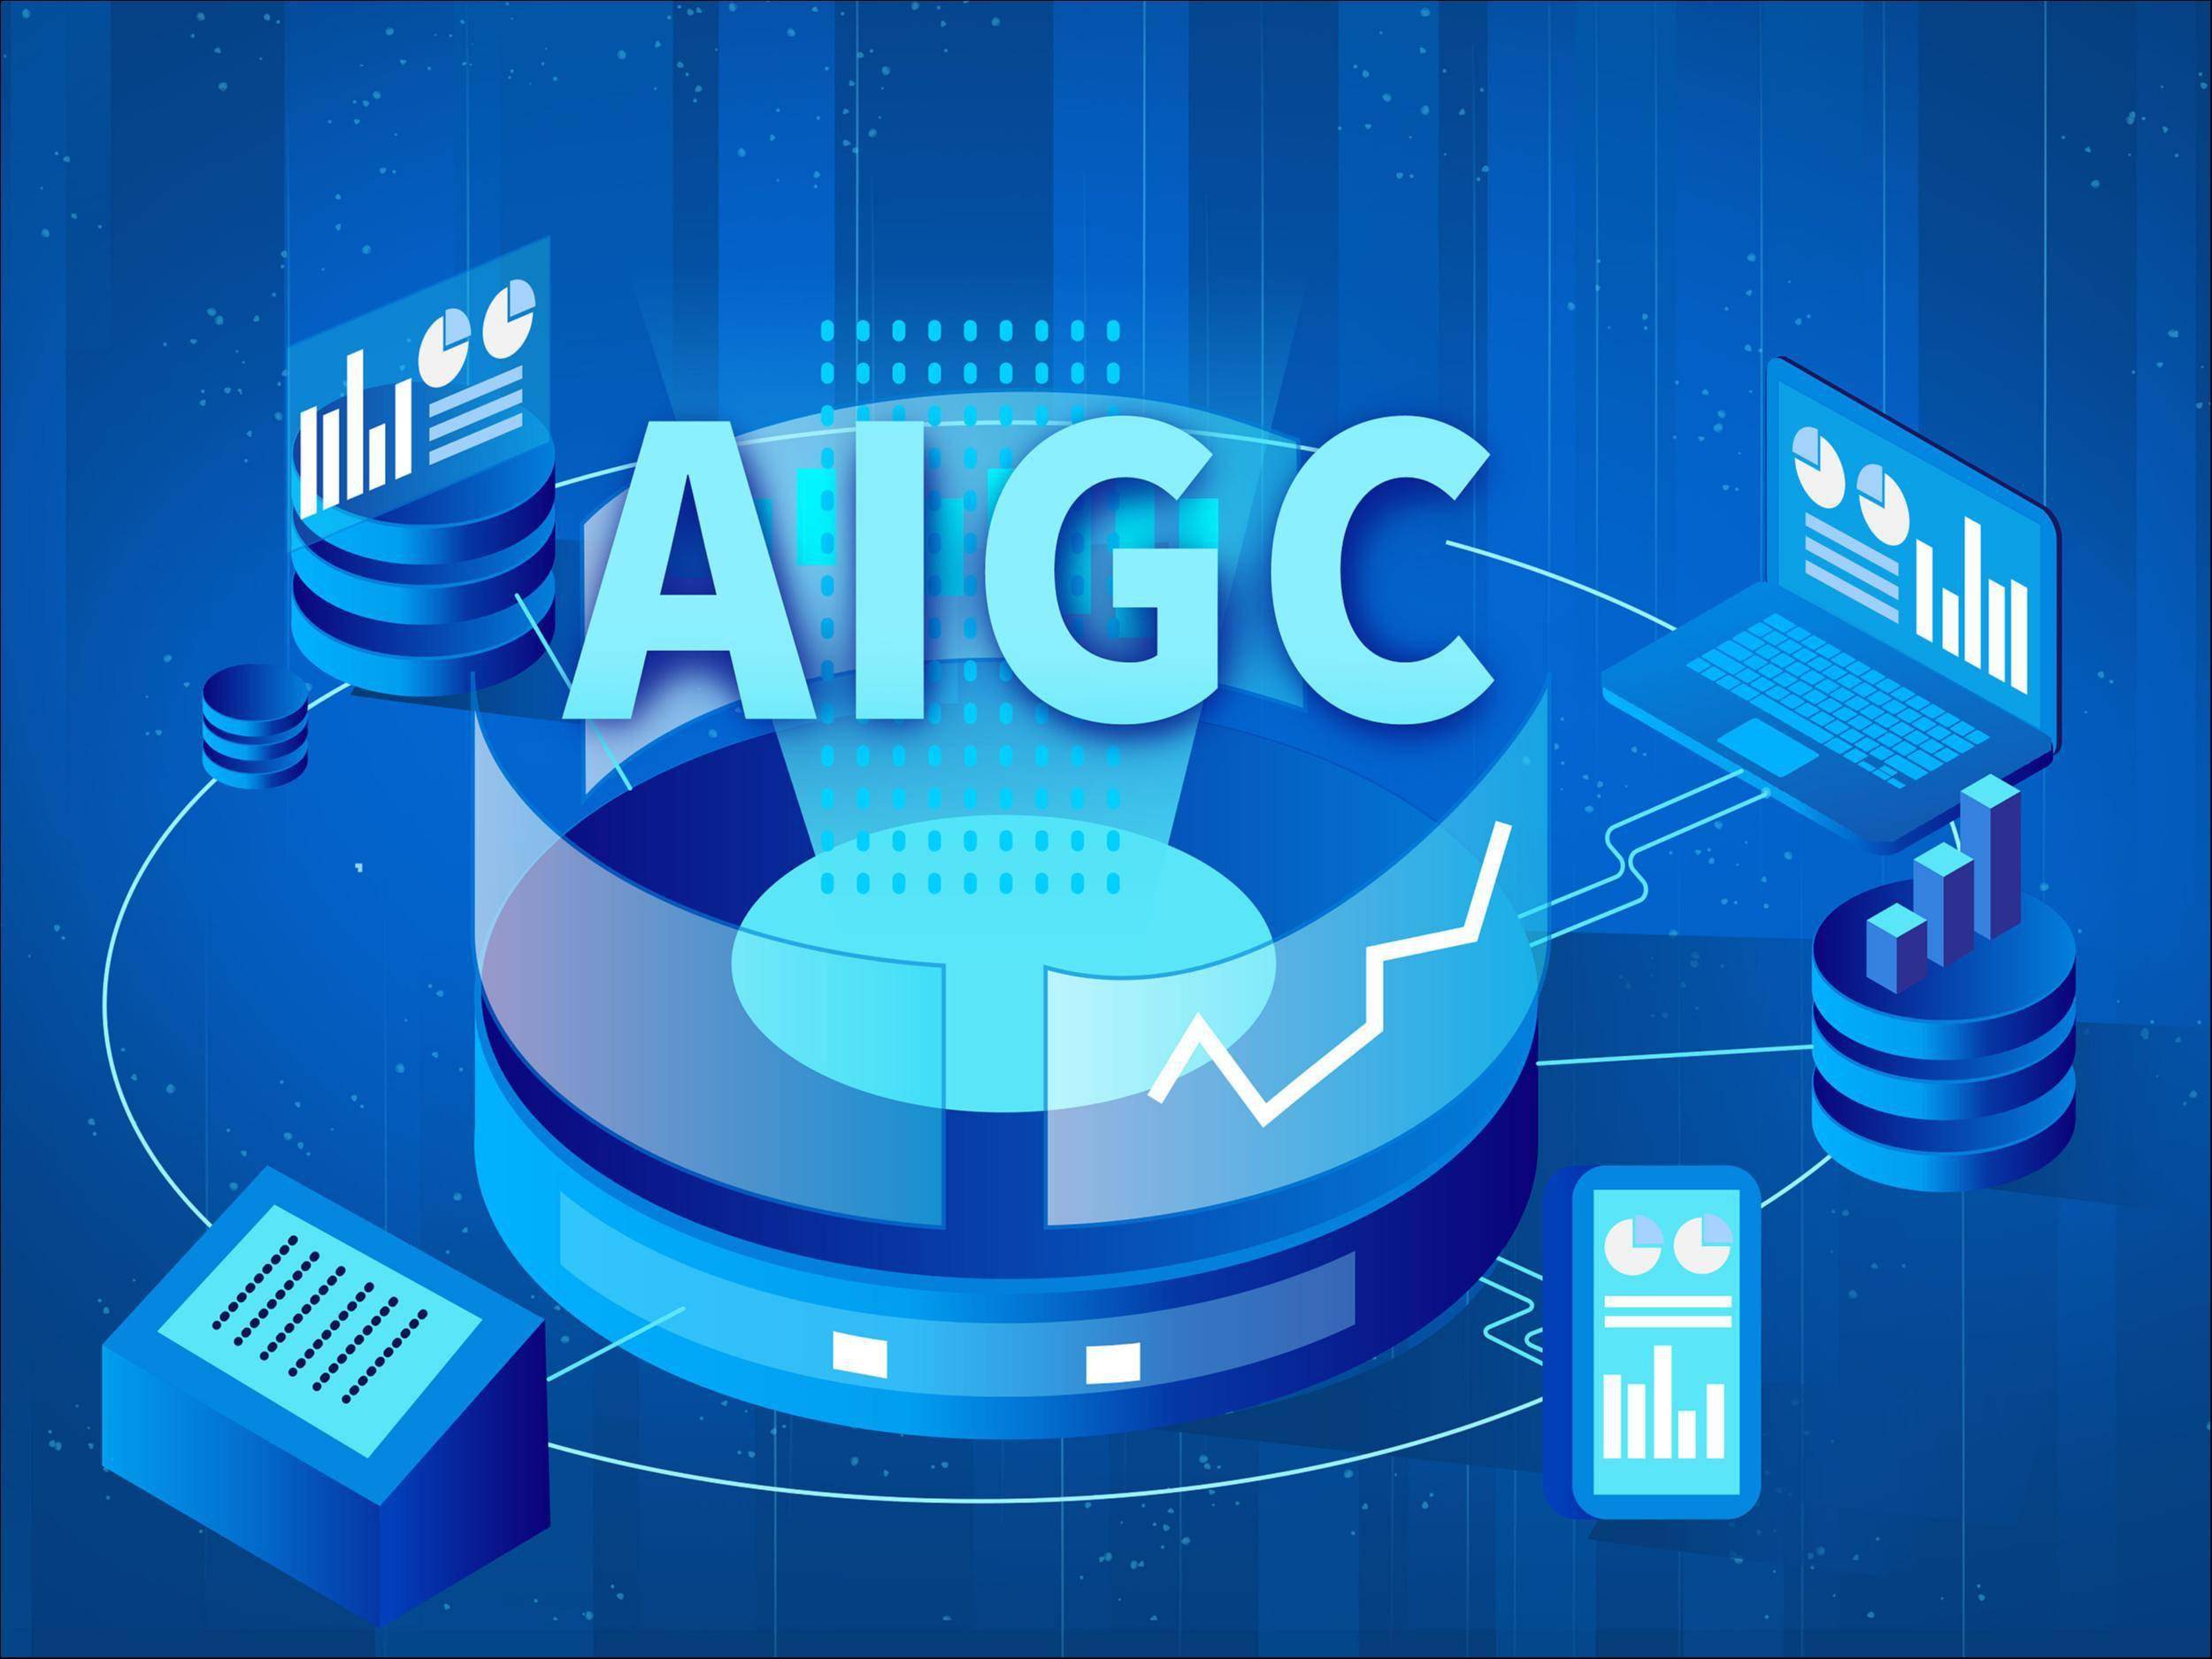 这是一张展示“AI GC”文字的概念艺术图片，包含数据图表、计算机和服务器元素，整体风格现代科技感强。